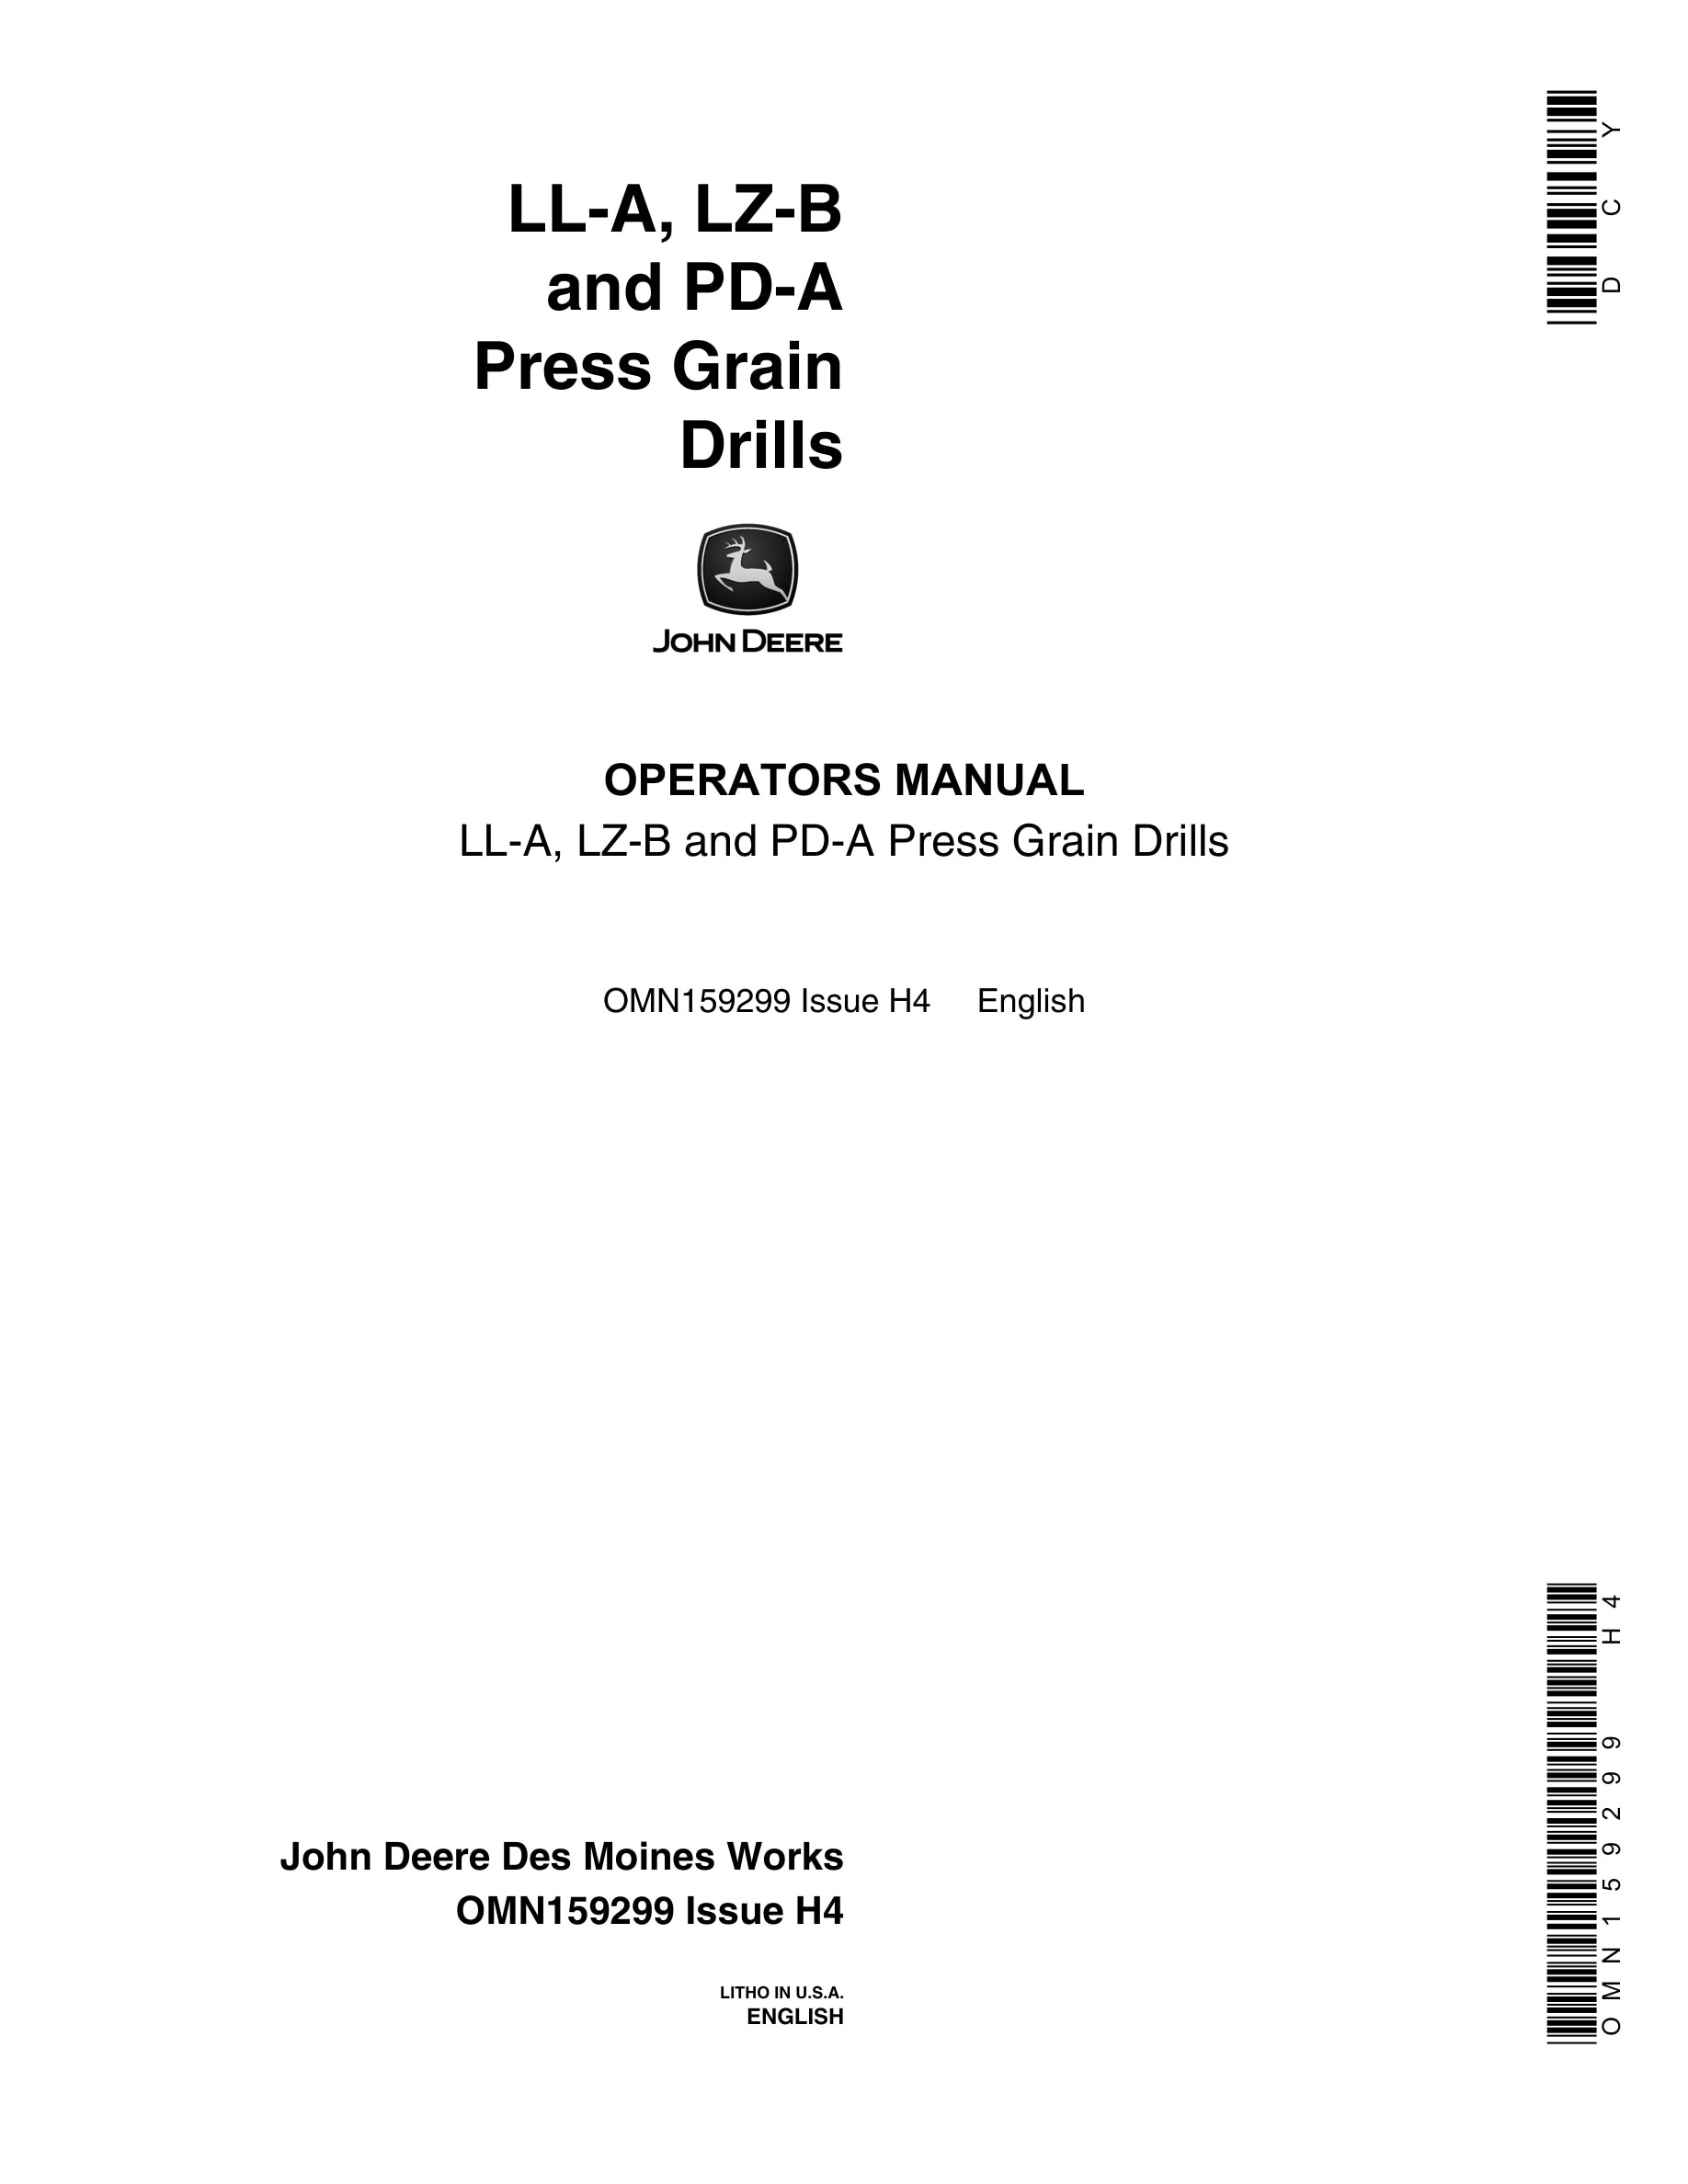 John Deere LL-A, LZ-B and PD-A Press Grain Drill Operator Manual OMN159299-1